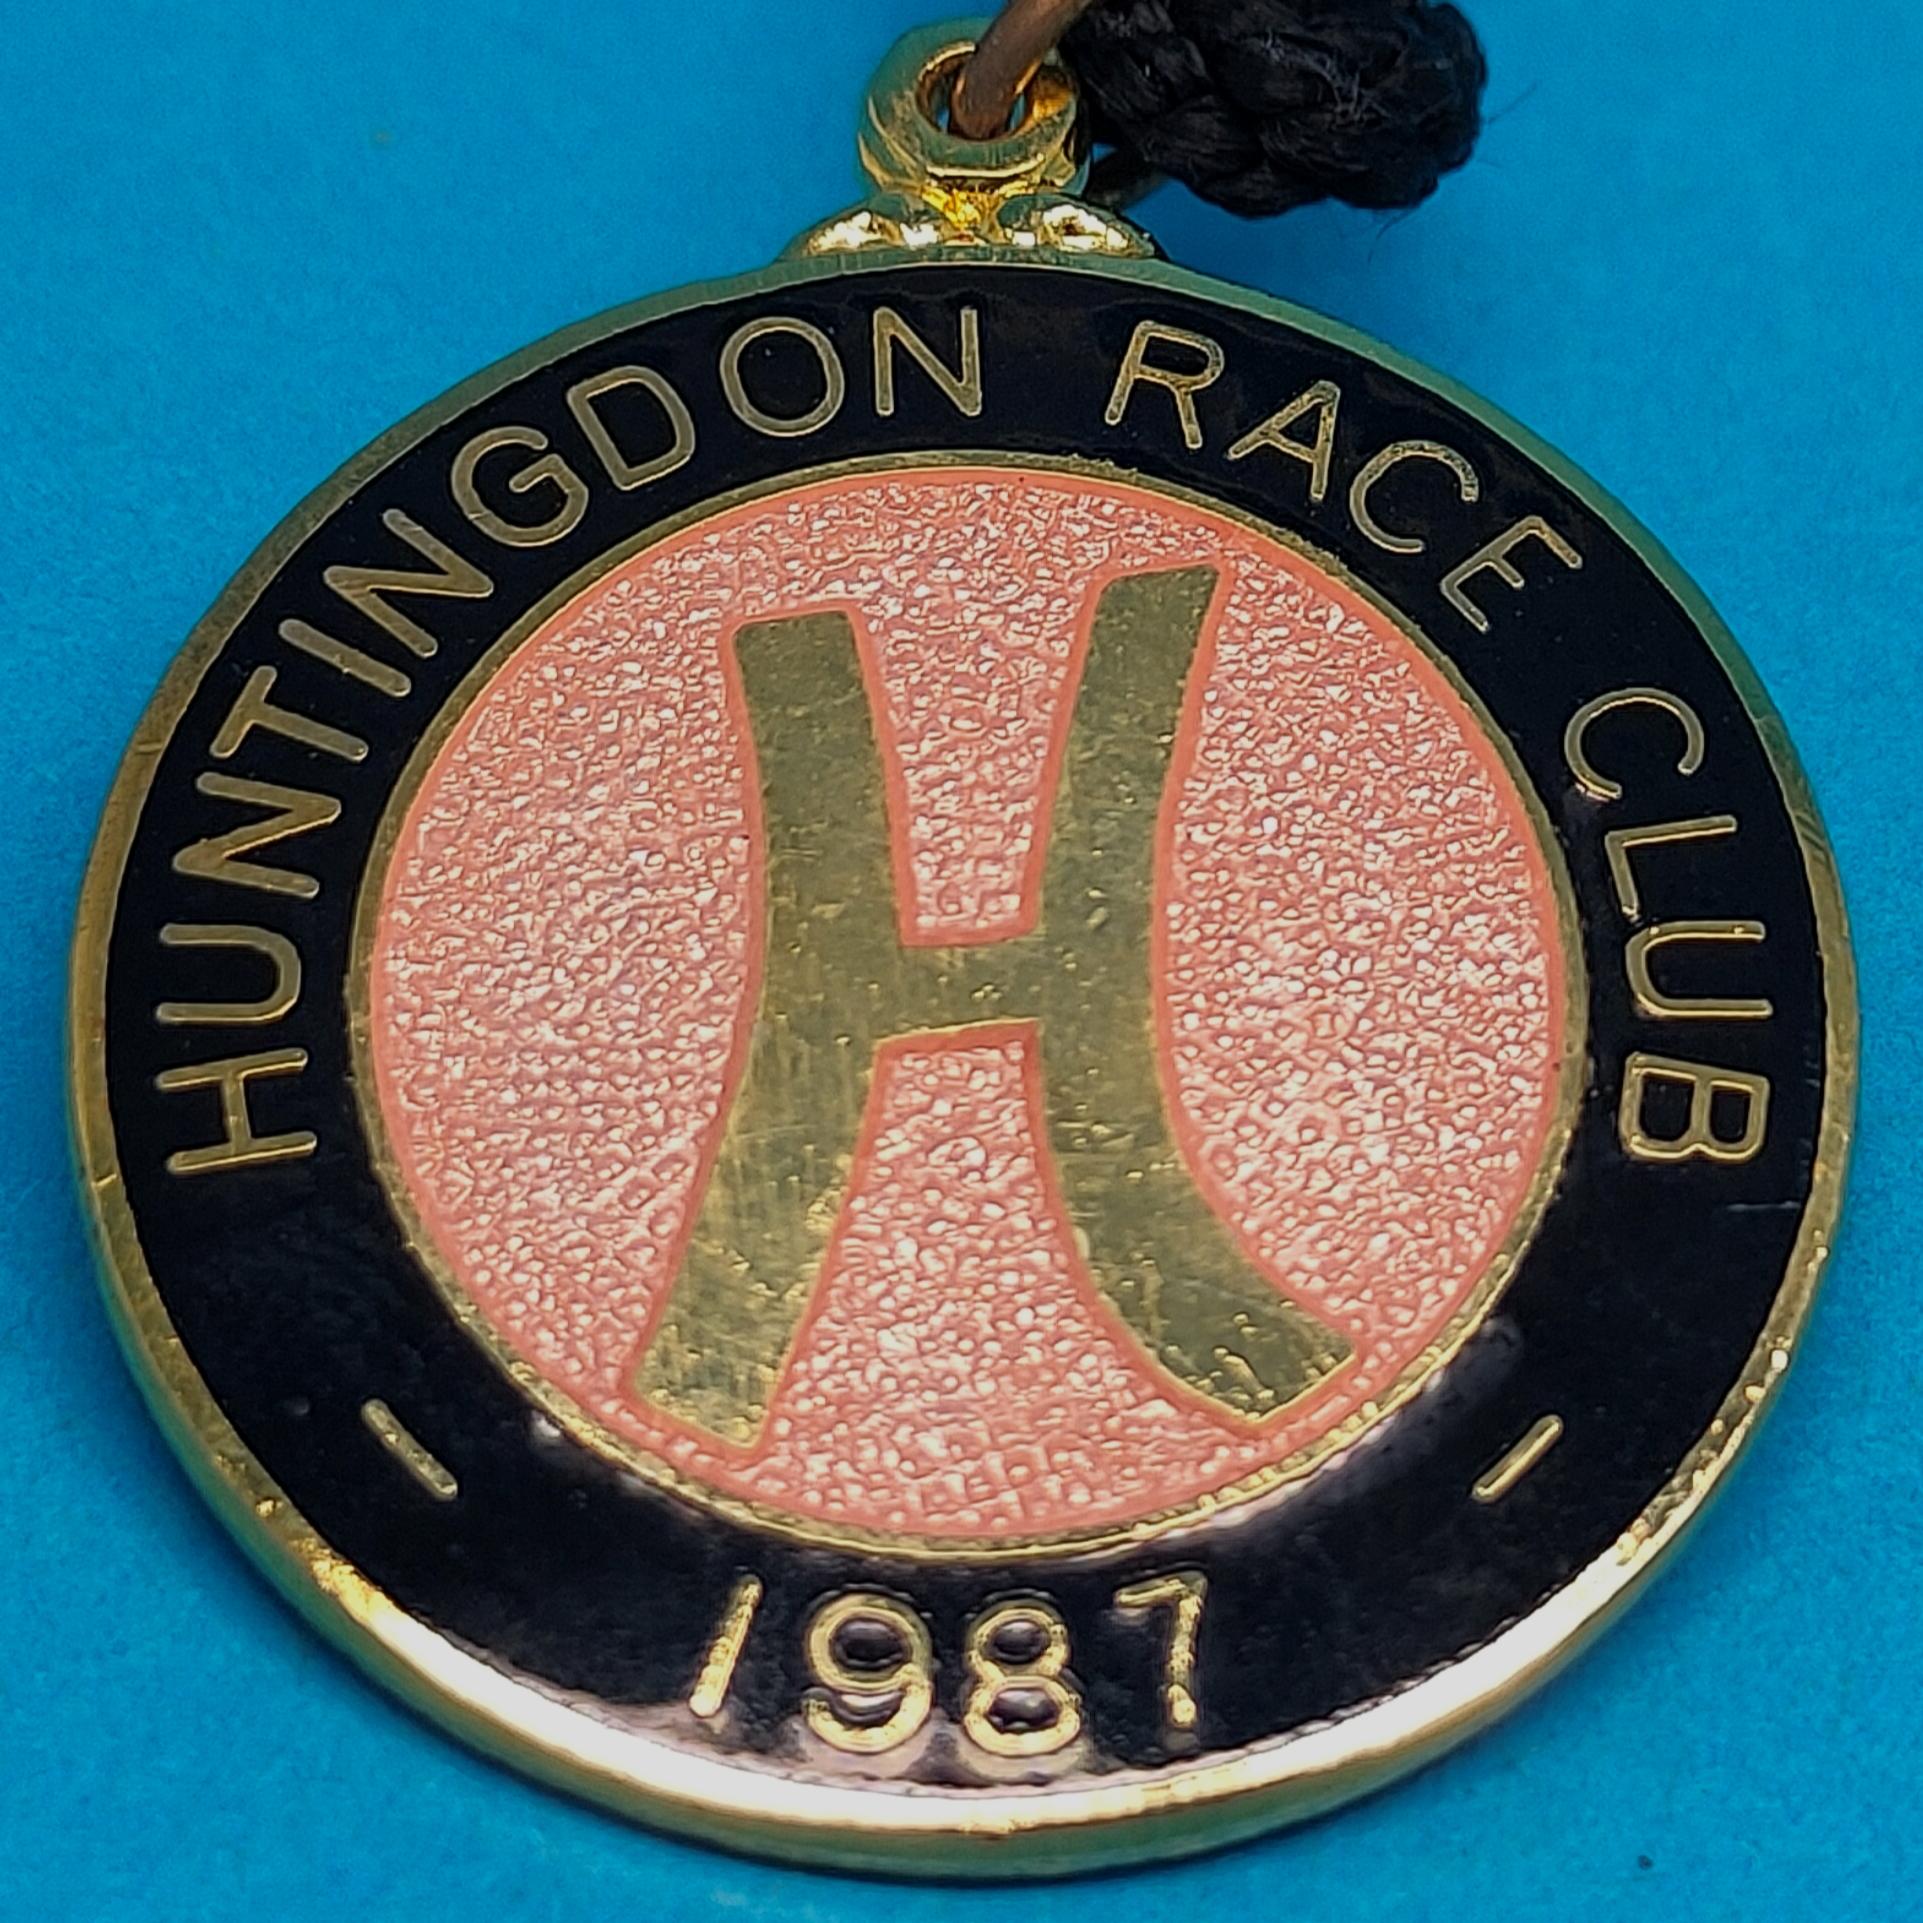 Huntingdon 1987